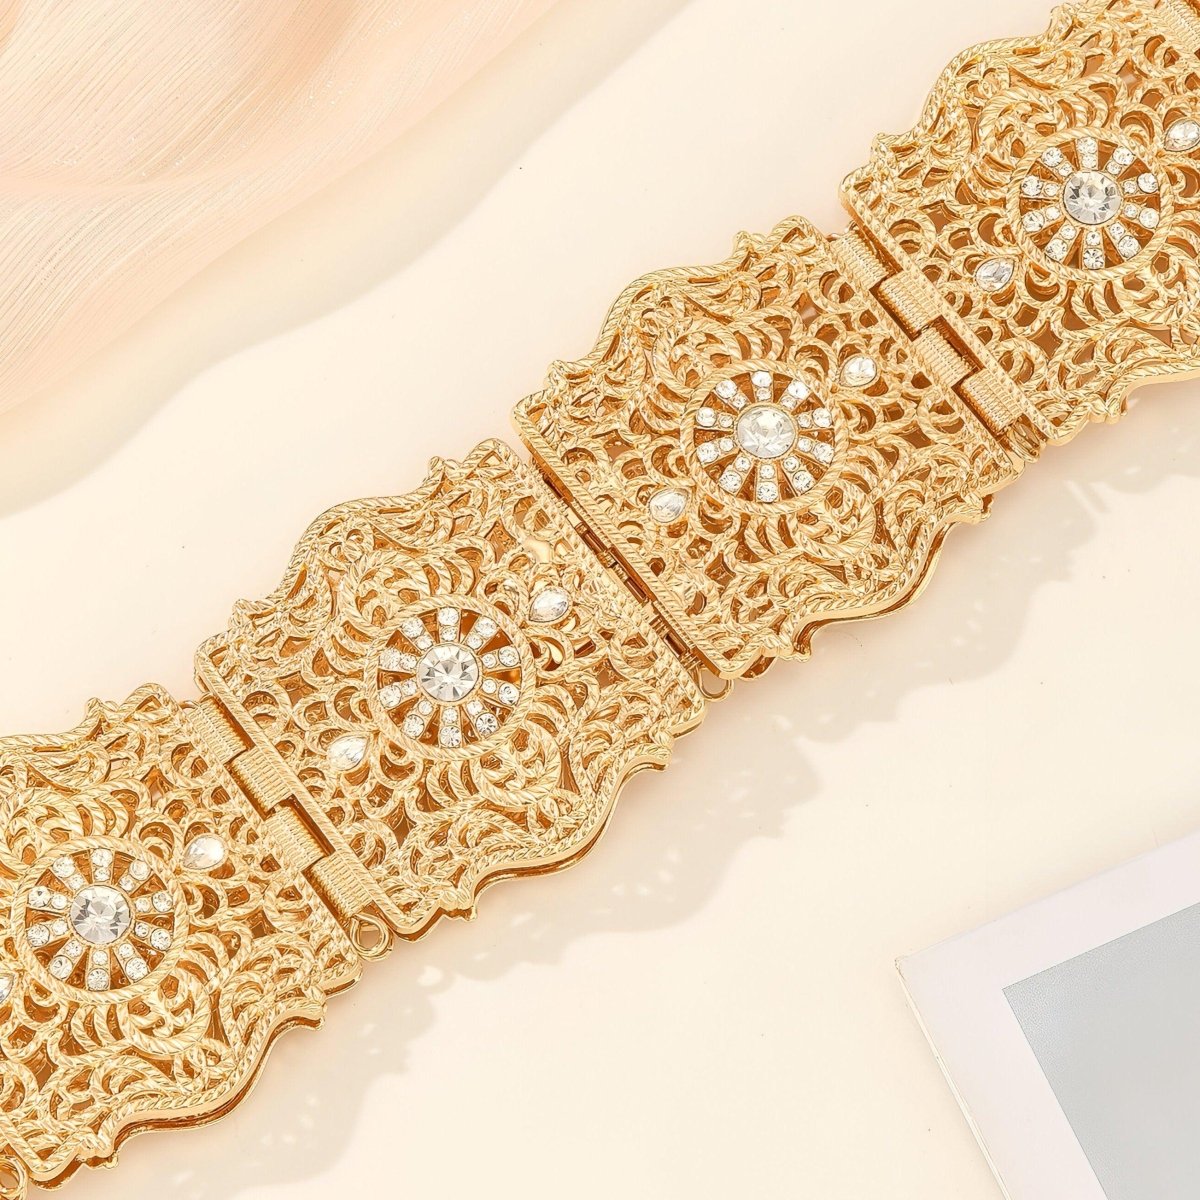 Ceinture marocaine avec ornement de diamants décoratifs, modèle Nadia - La Boutique de la Ceinture